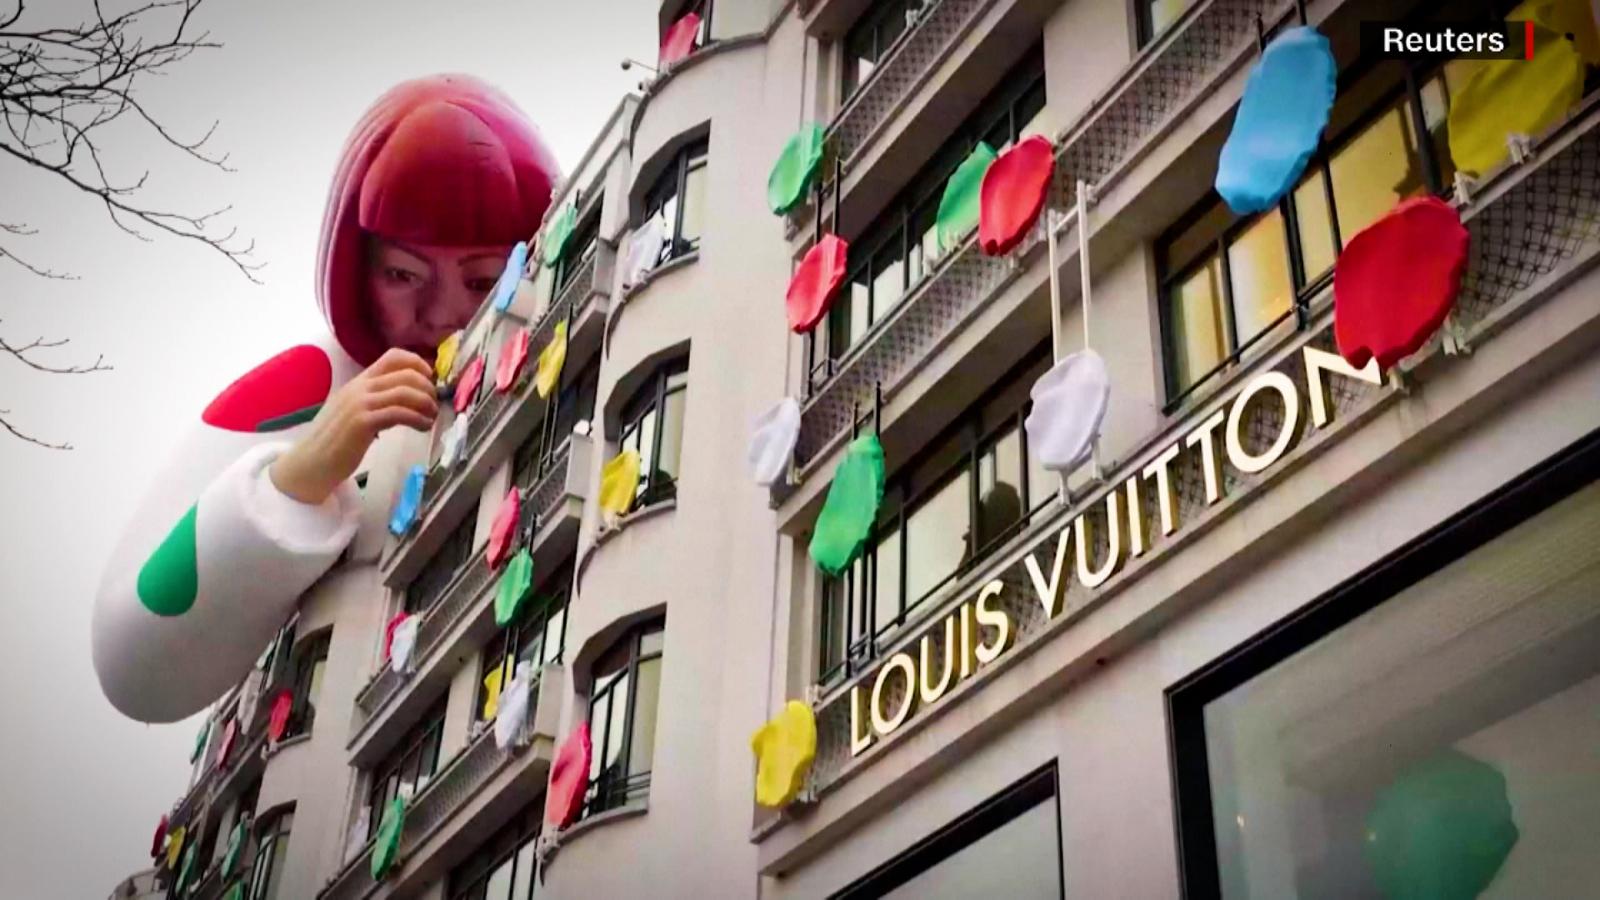 Yayoi Kusama, junto a Louis Vuitton, llena de lunares las grandes ciudades, Video